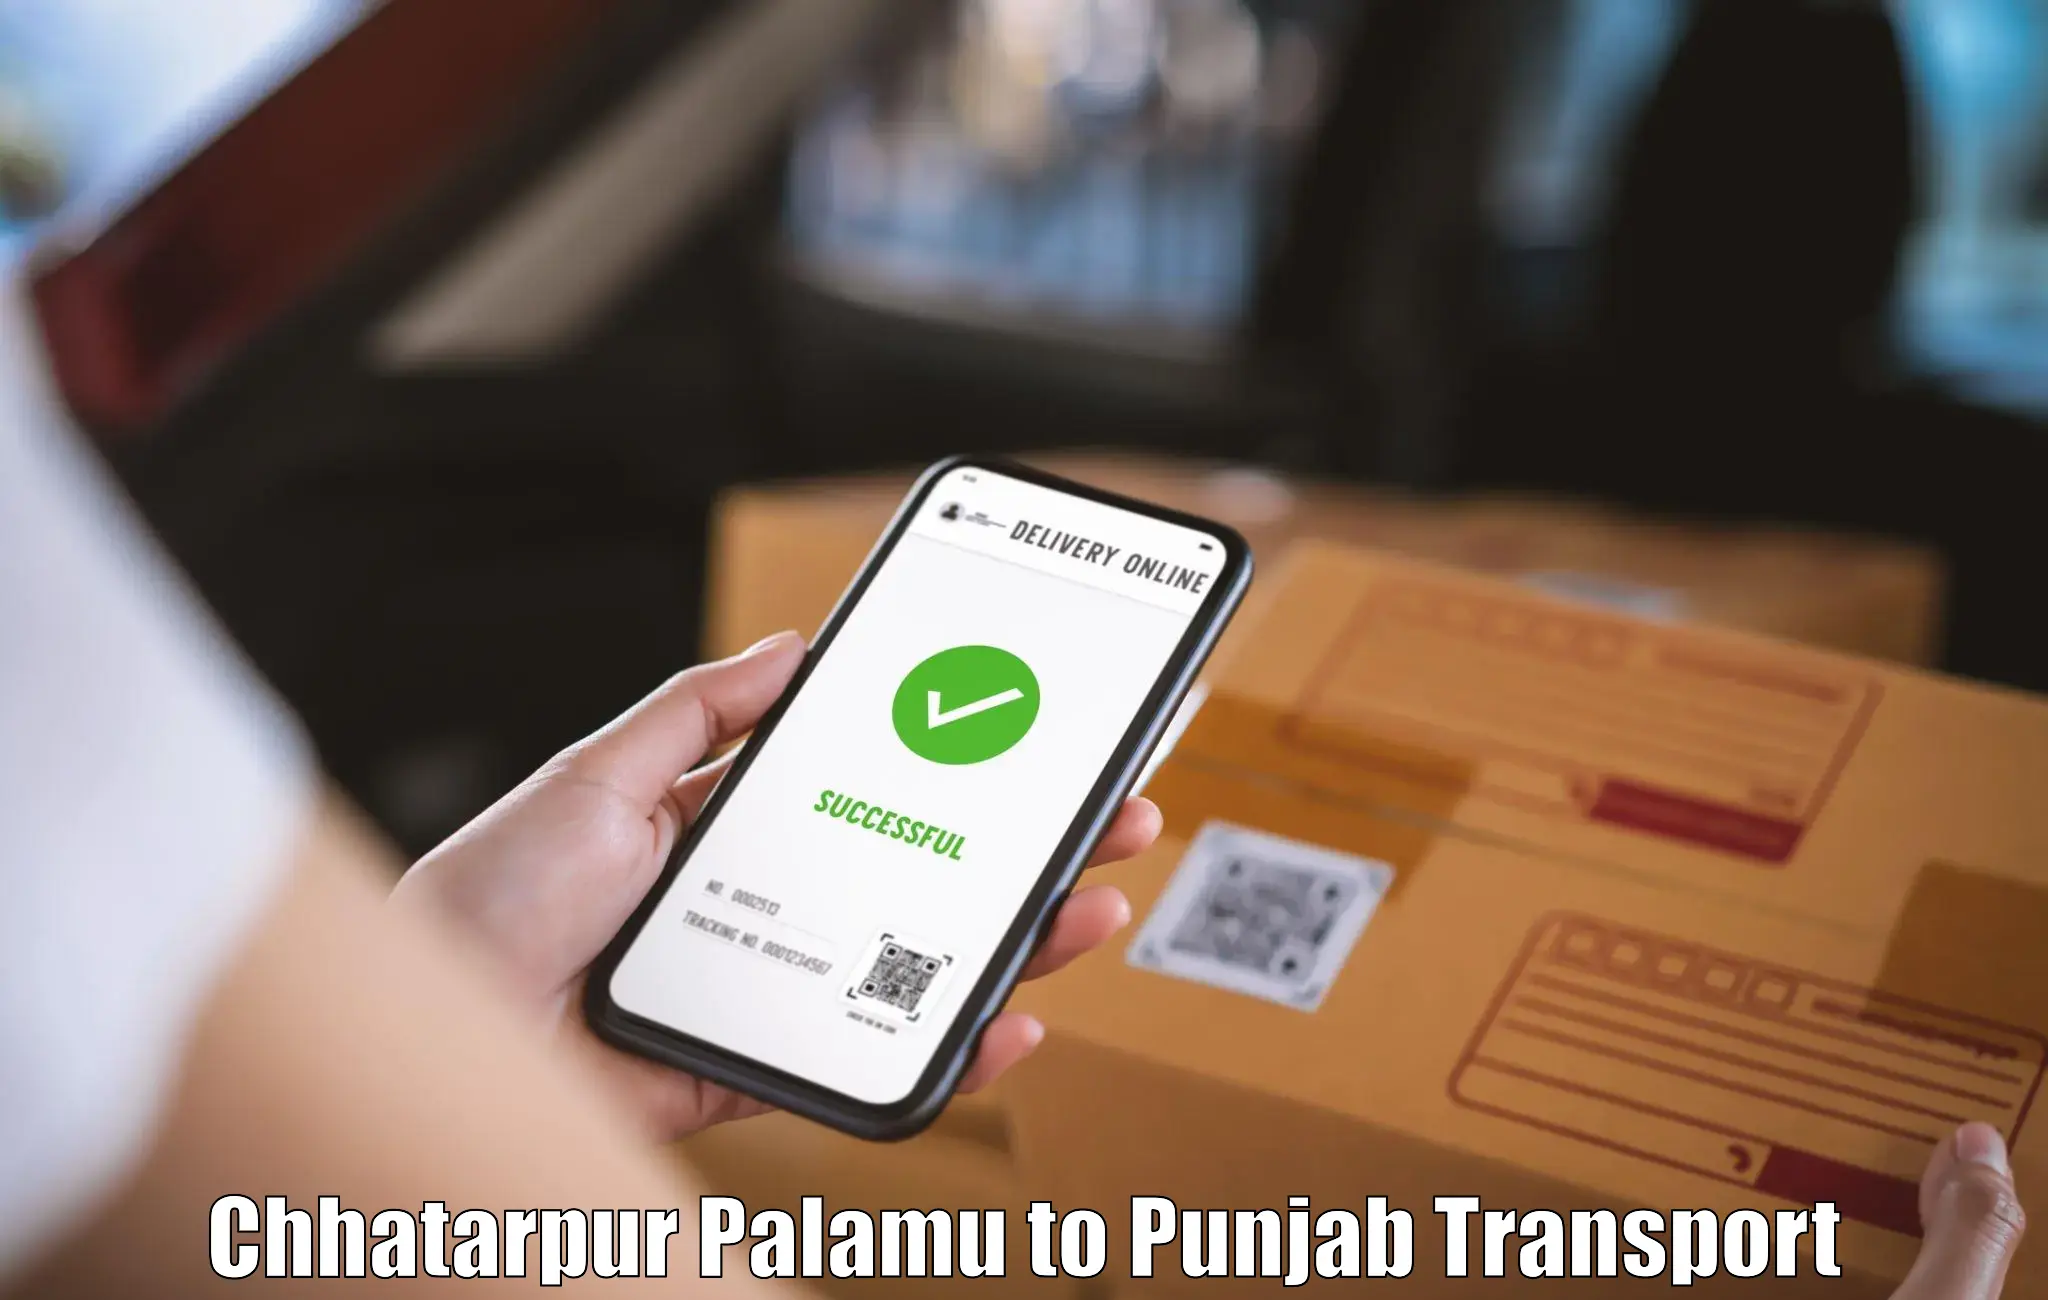 Nearby transport service Chhatarpur Palamu to Amritsar